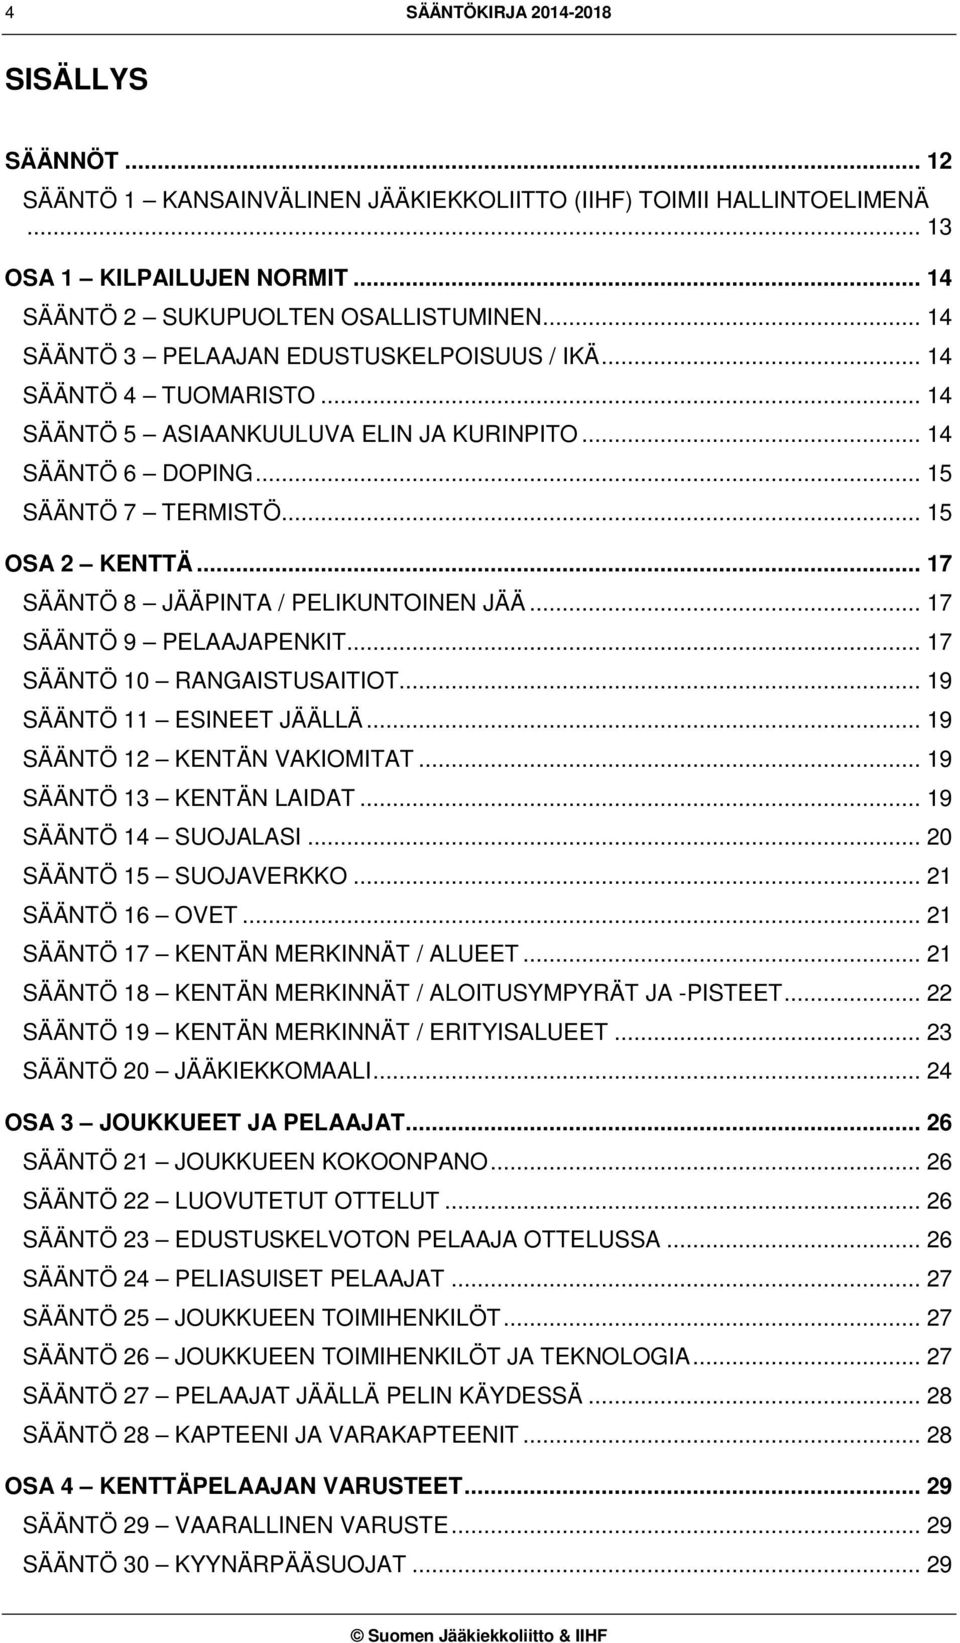 .. 17 SÄÄNTÖ 8 JÄÄPINTA / PELIKUNTOINEN JÄÄ... 17 SÄÄNTÖ 9 PELAAJAPENKIT... 17 SÄÄNTÖ 10 RANGAISTUSAITIOT... 19 SÄÄNTÖ 11 ESINEET JÄÄLLÄ... 19 SÄÄNTÖ 12 KENTÄN VAKIOMITAT... 19 SÄÄNTÖ 13 KENTÄN LAIDAT.